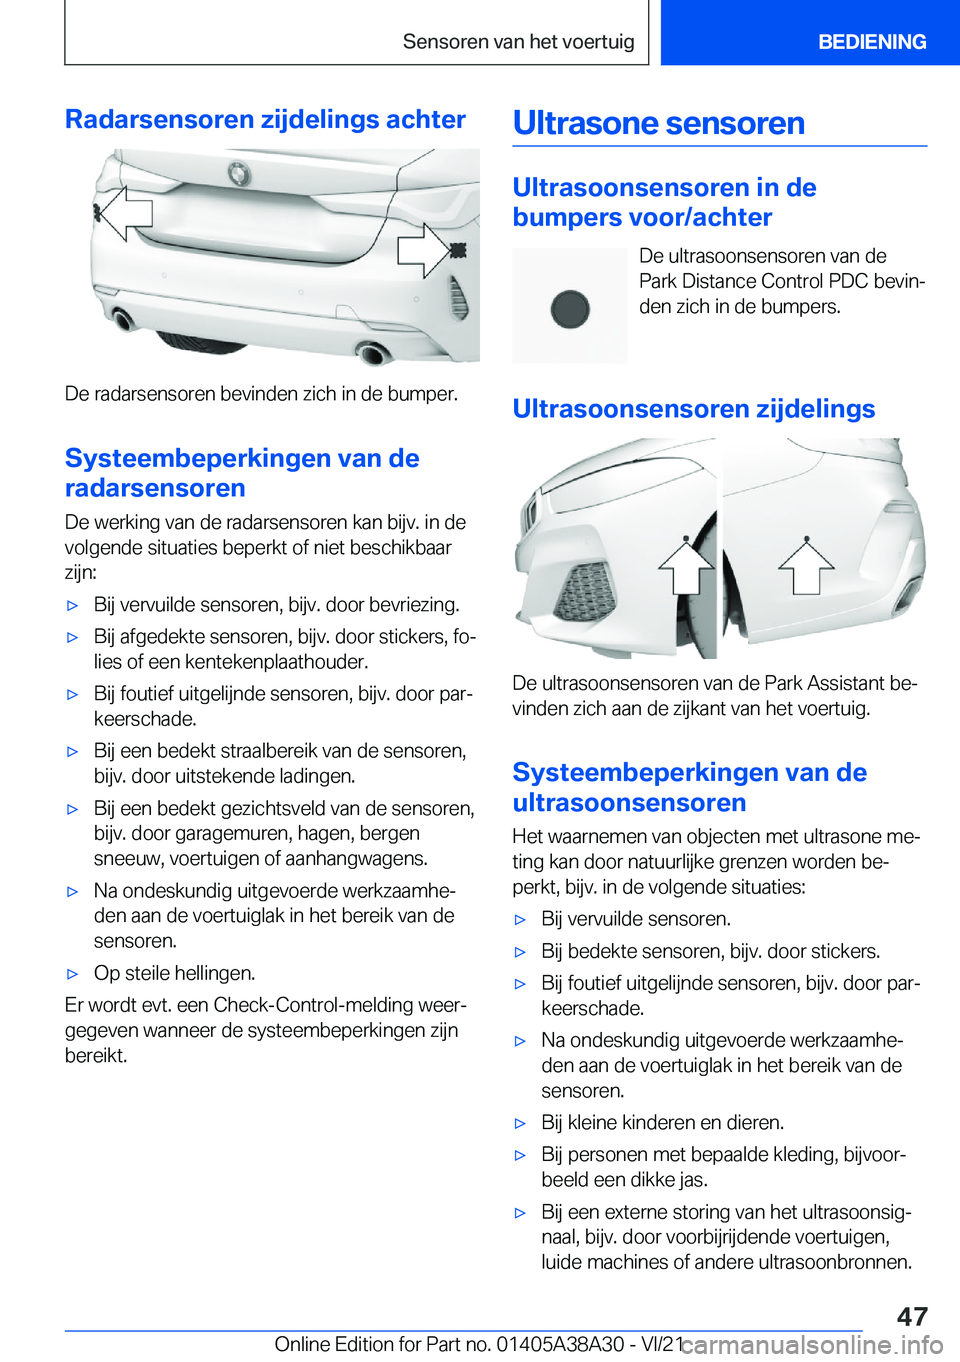 BMW 4 SERIES GRAN COUPE 2022  Instructieboekjes (in Dutch) �R�a�d�a�r�s�e�n�s�o�r�e�n��z�i�j�d�e�l�i�n�g�s��a�c�h�t�e�r
�D�e��r�a�d�a�r�s�e�n�s�o�r�e�n��b�e�v�i�n�d�e�n��z�i�c�h��i�n��d�e��b�u�m�p�e�r�.
�S�y�s�t�e�e�m�b�e�p�e�r�k�i�n�g�e�n��v�a�n��d